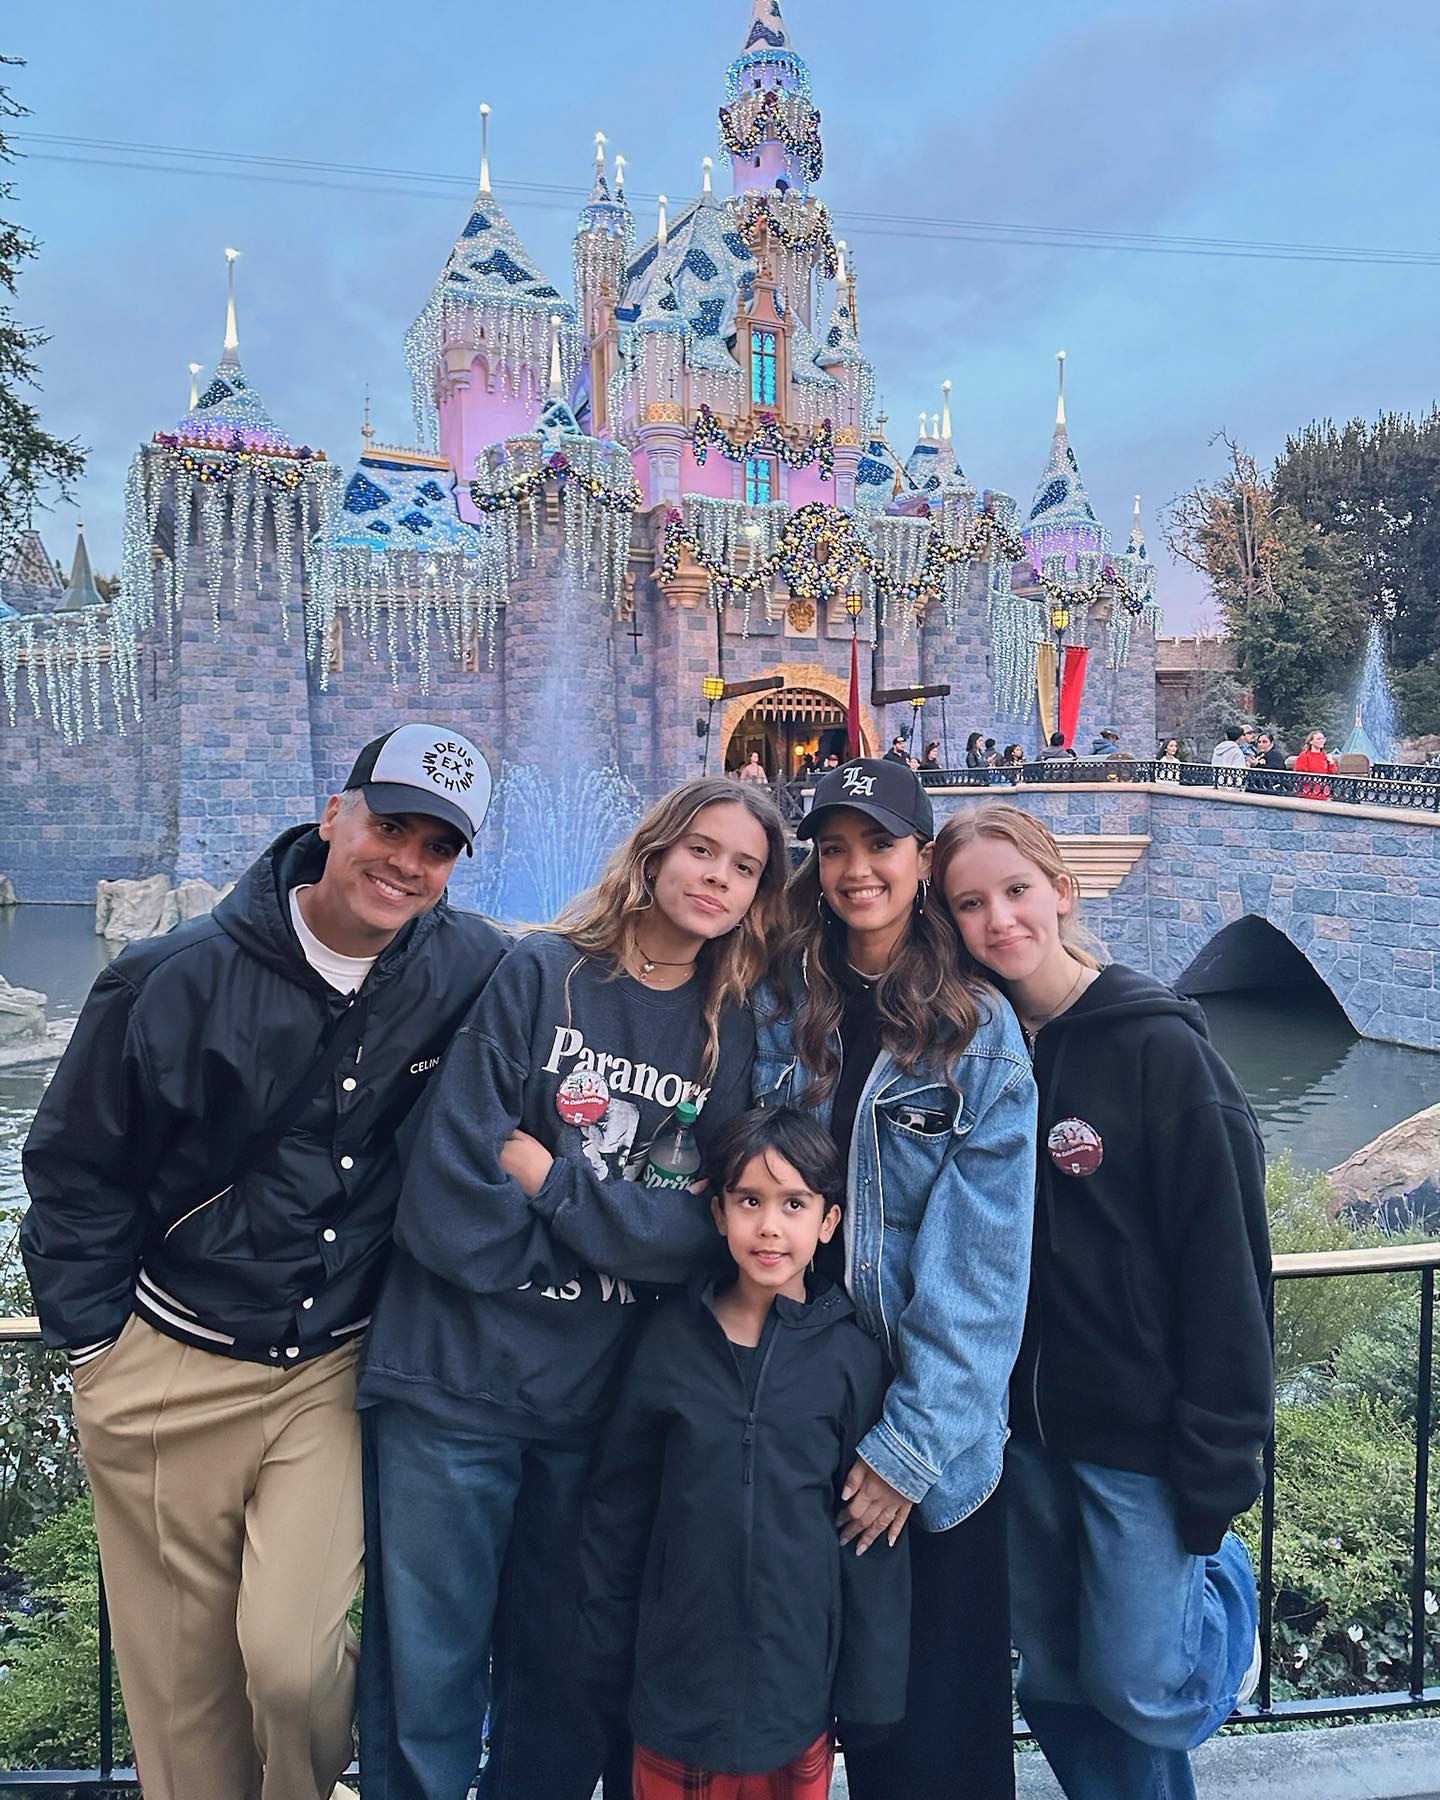 Η Jessica Alba ξεκίνησε θεραπεία με την κόρη της - «Μαλώναμε όλη την ώρα για χαζά πράγματα»